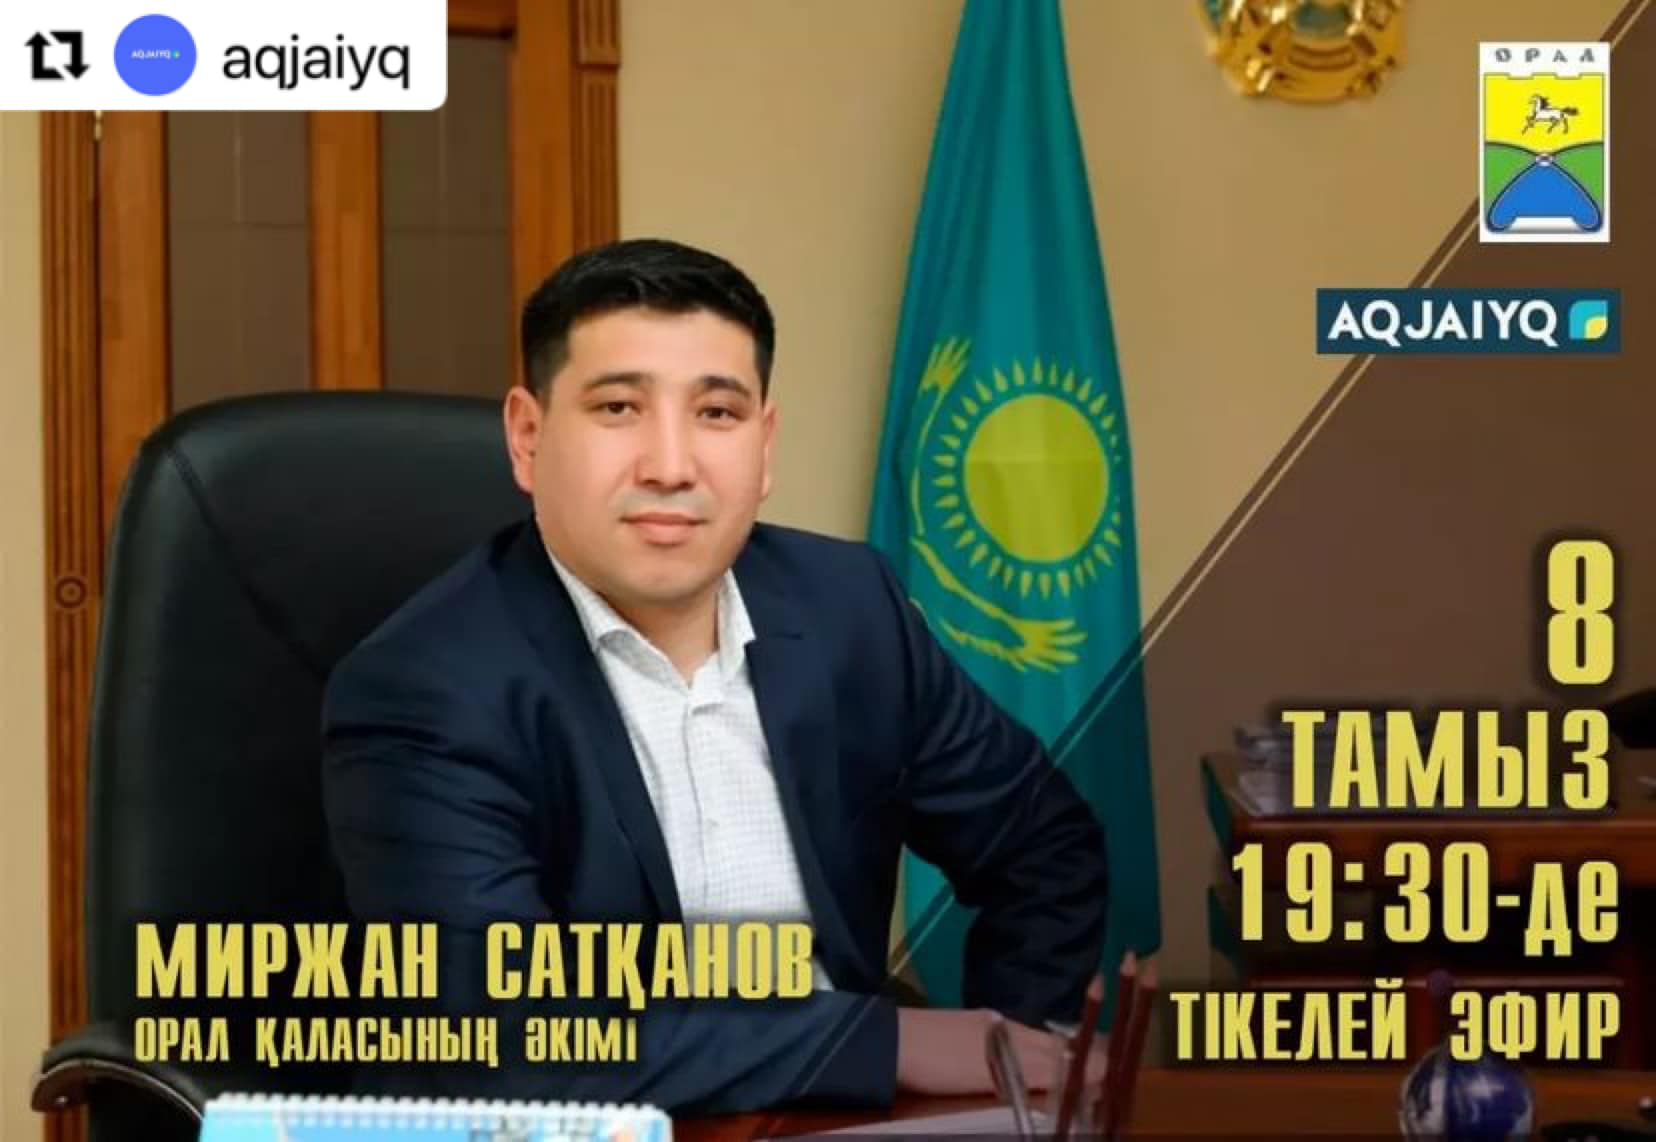 Сегодня в 19:30 аким города Уральск М. Сатканов даст интервью о социально-экономическом развитии города в прямом эфире телеканала «AQJAIYQ».